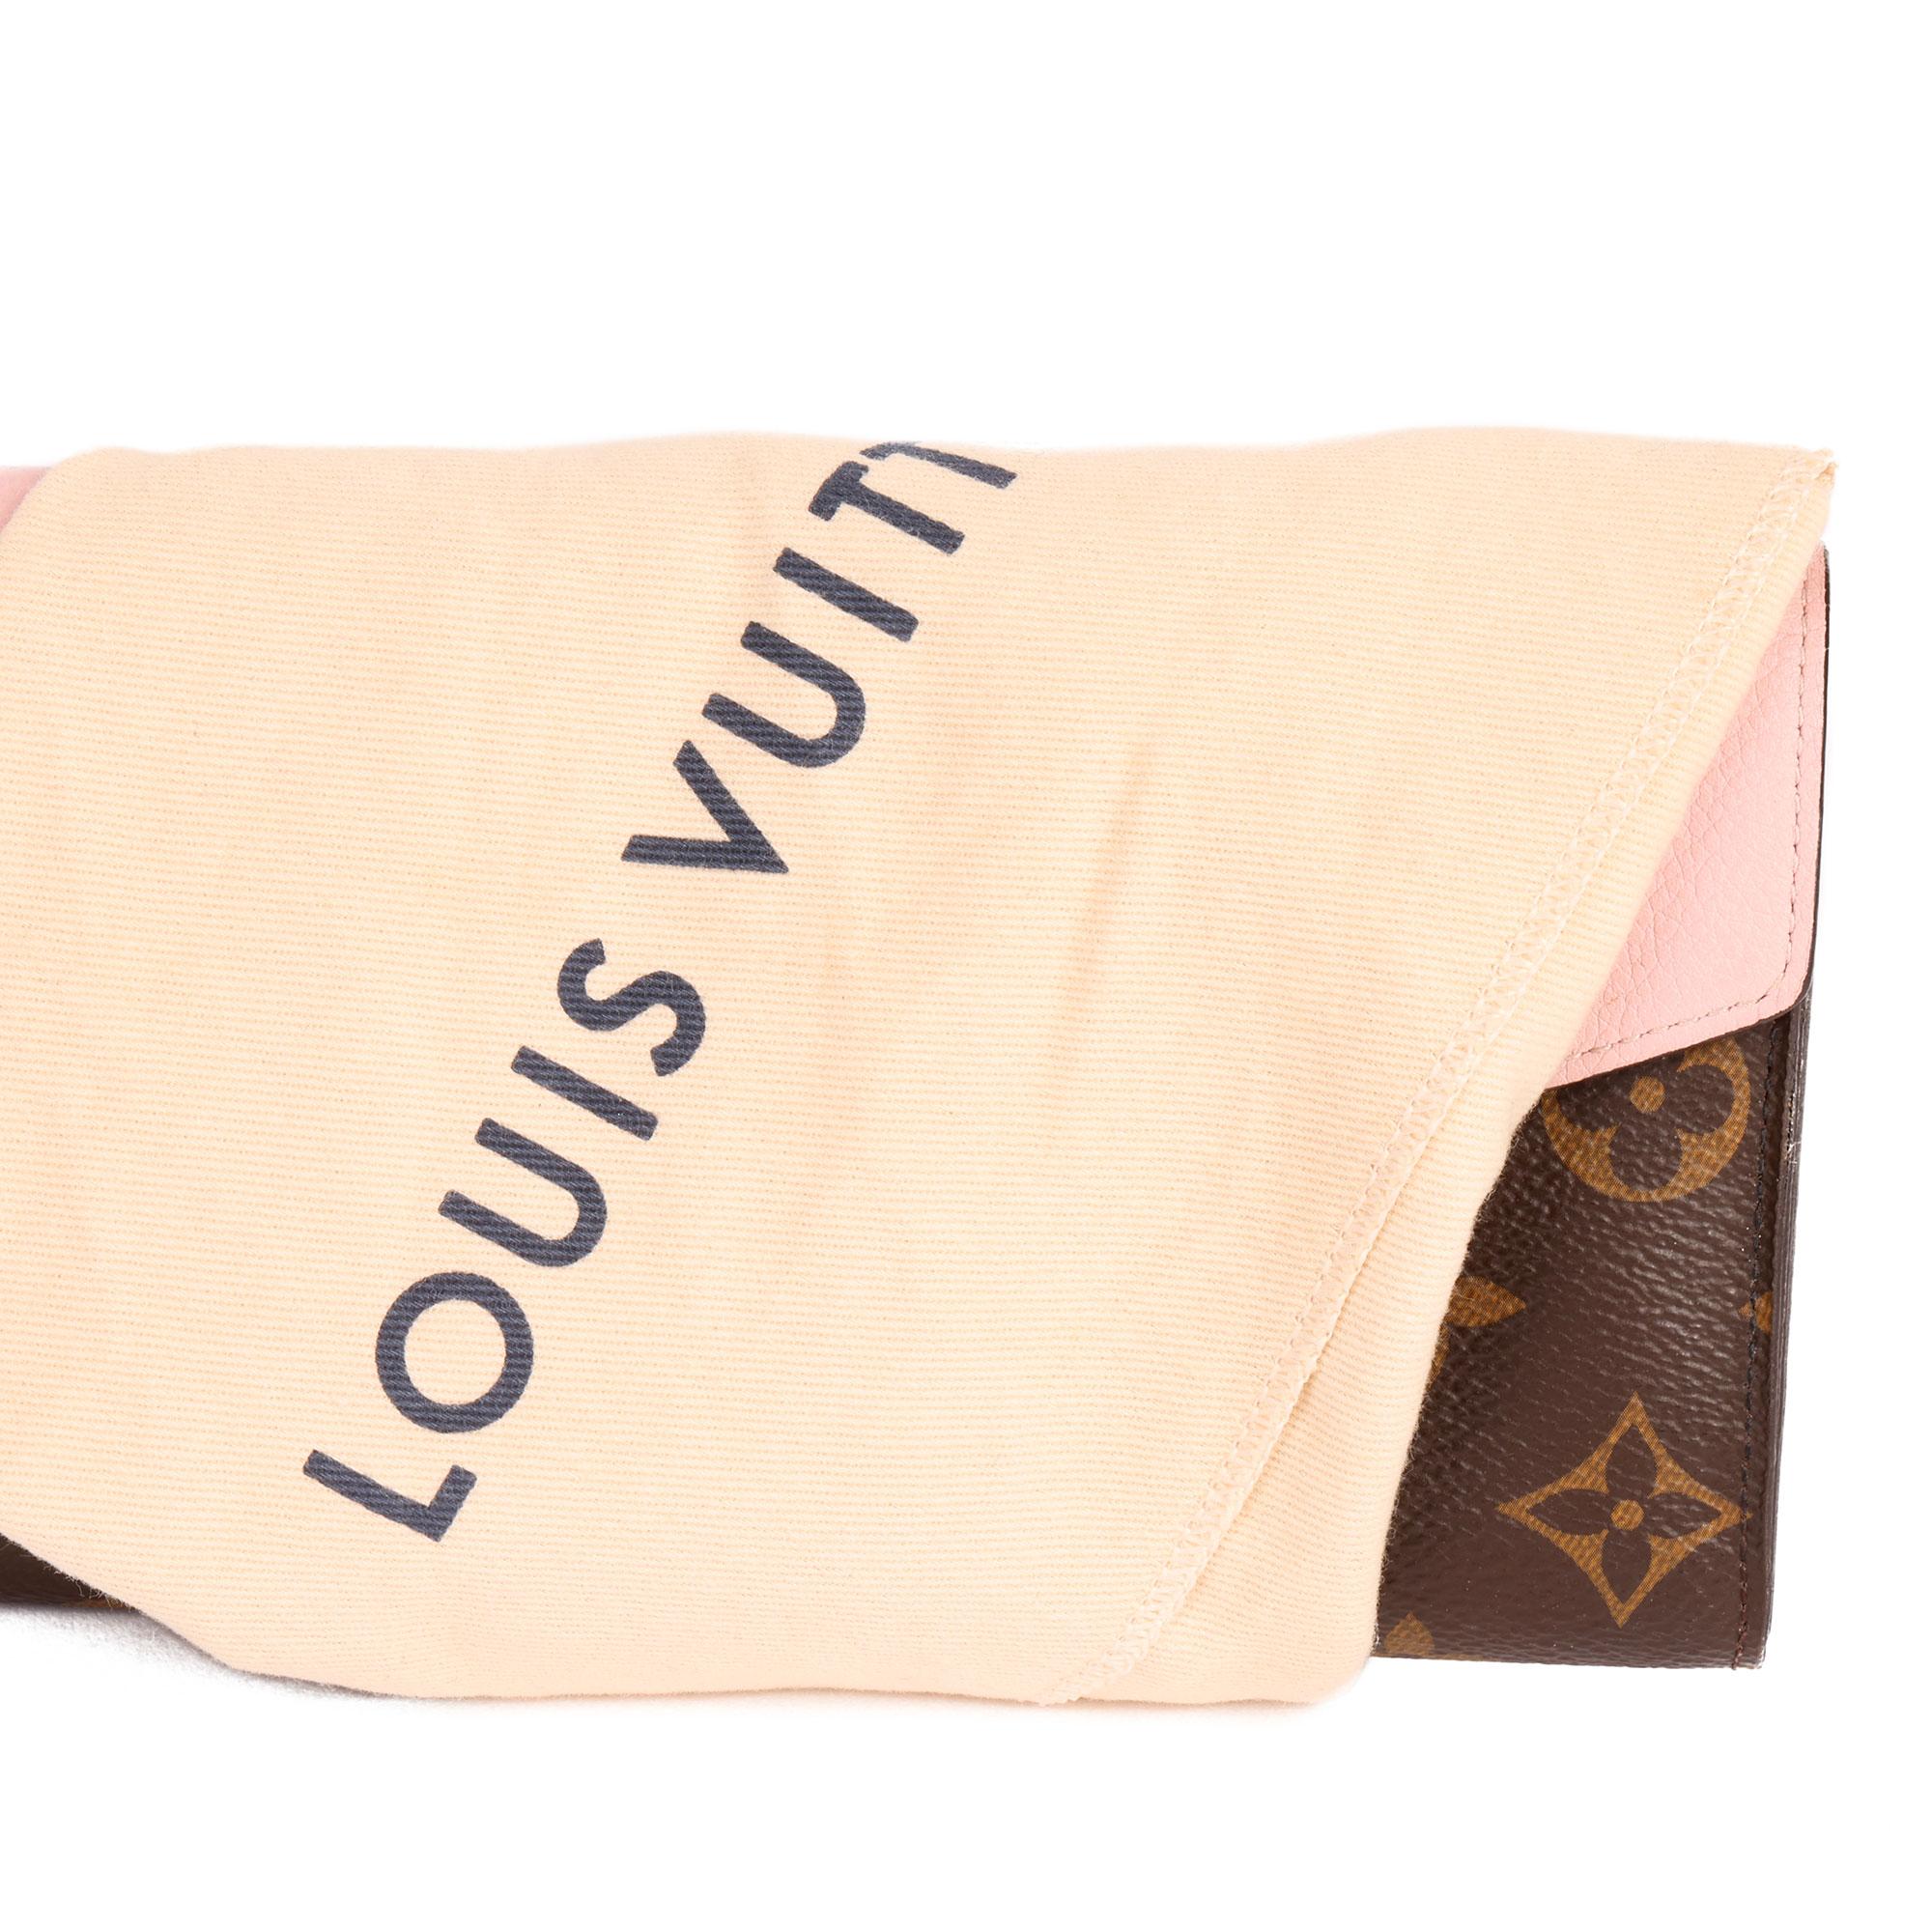 Orange Louis Vuitton Rose Ballerine, Monogram Canvas & Vachetta Leather Metis Wallet